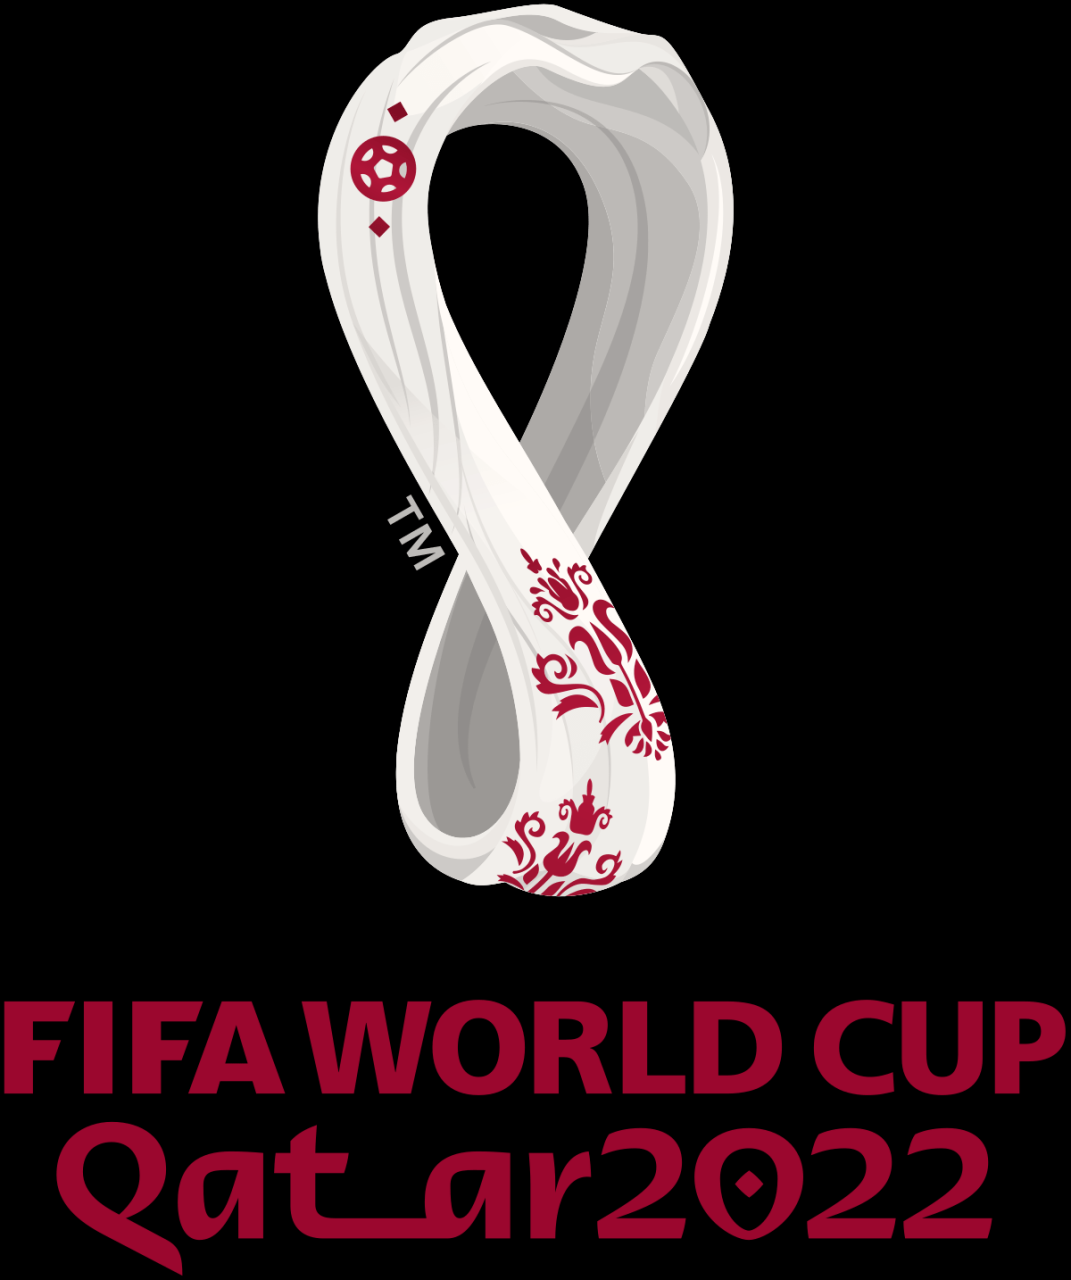 تردد القنوات المجانية الناقلة لمباريات كأس العالم 2022 على استرا